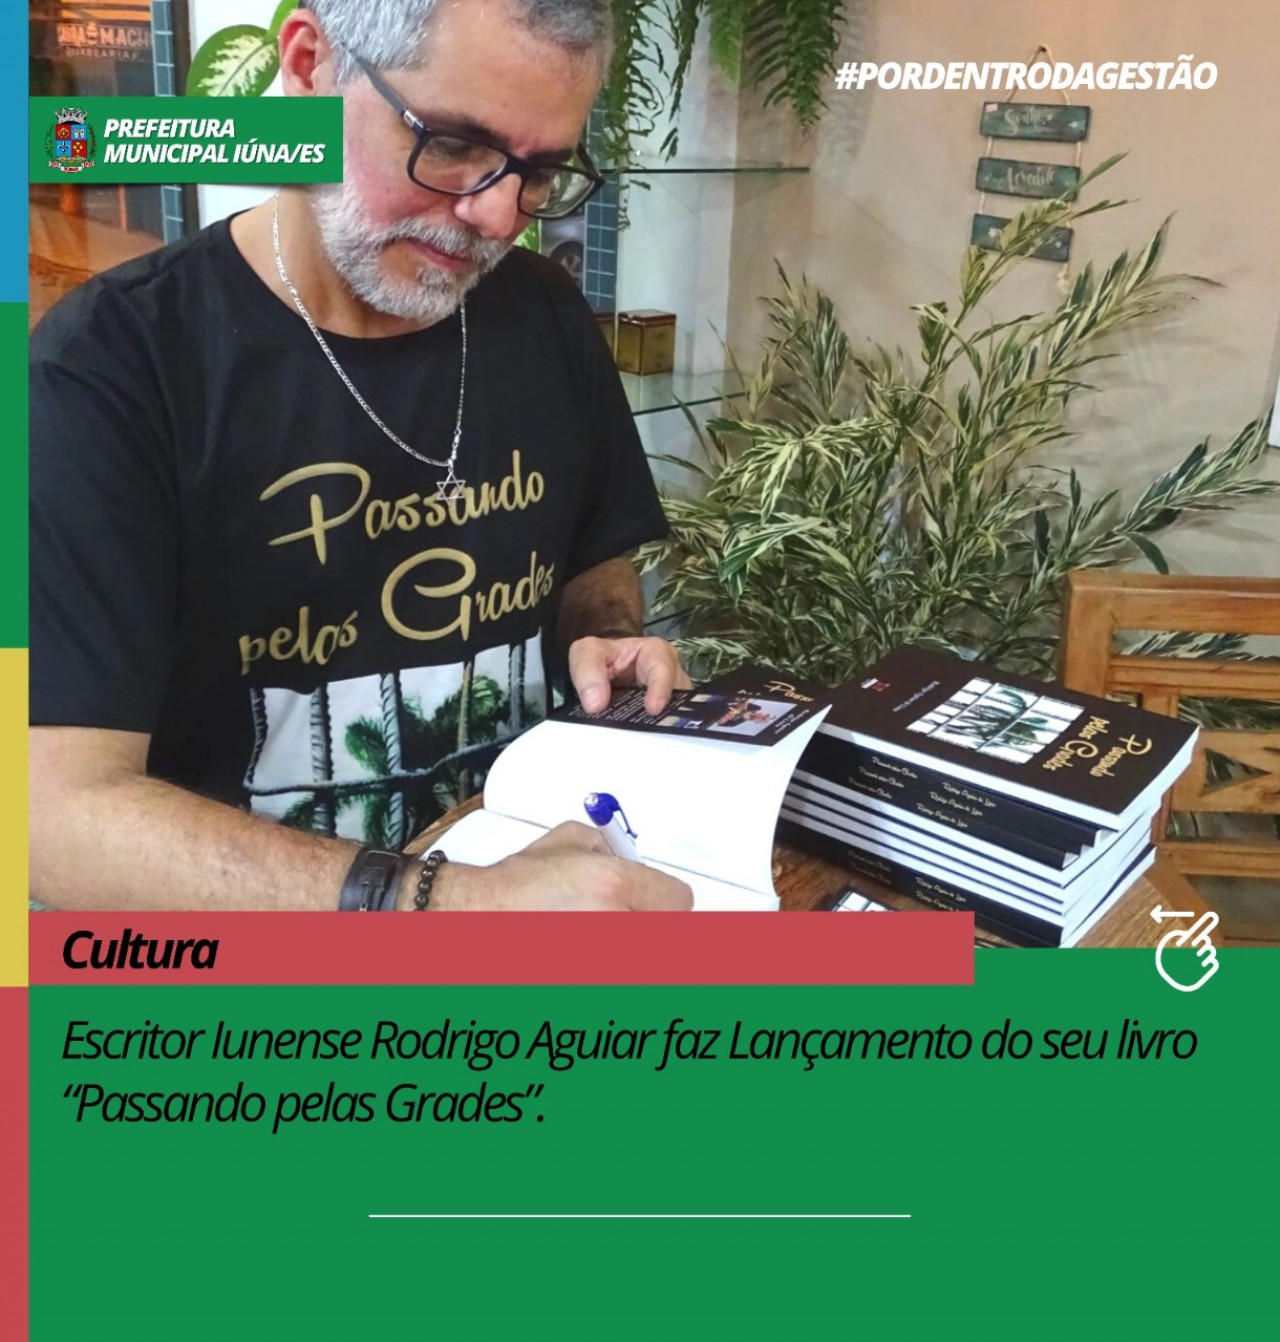 Escritor Iunense Rodrigo Aguiar faz Lançamento do seu livro “Passando pelas Grades”